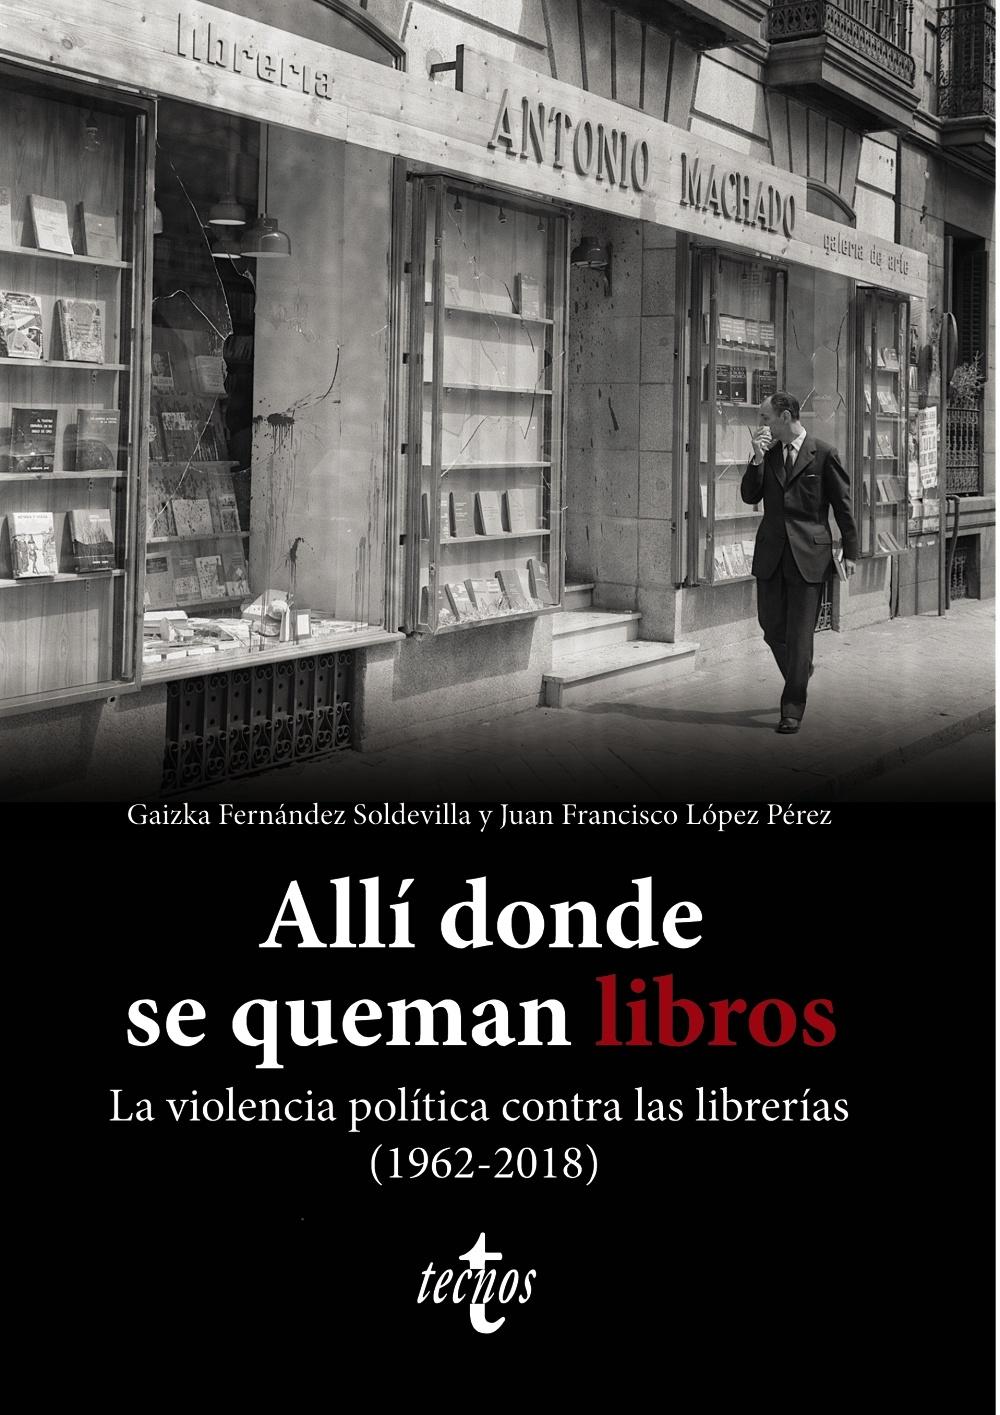 Allí Donde se Queman los Libros "La Violencia Política contra las Librerías (1962-2018)"